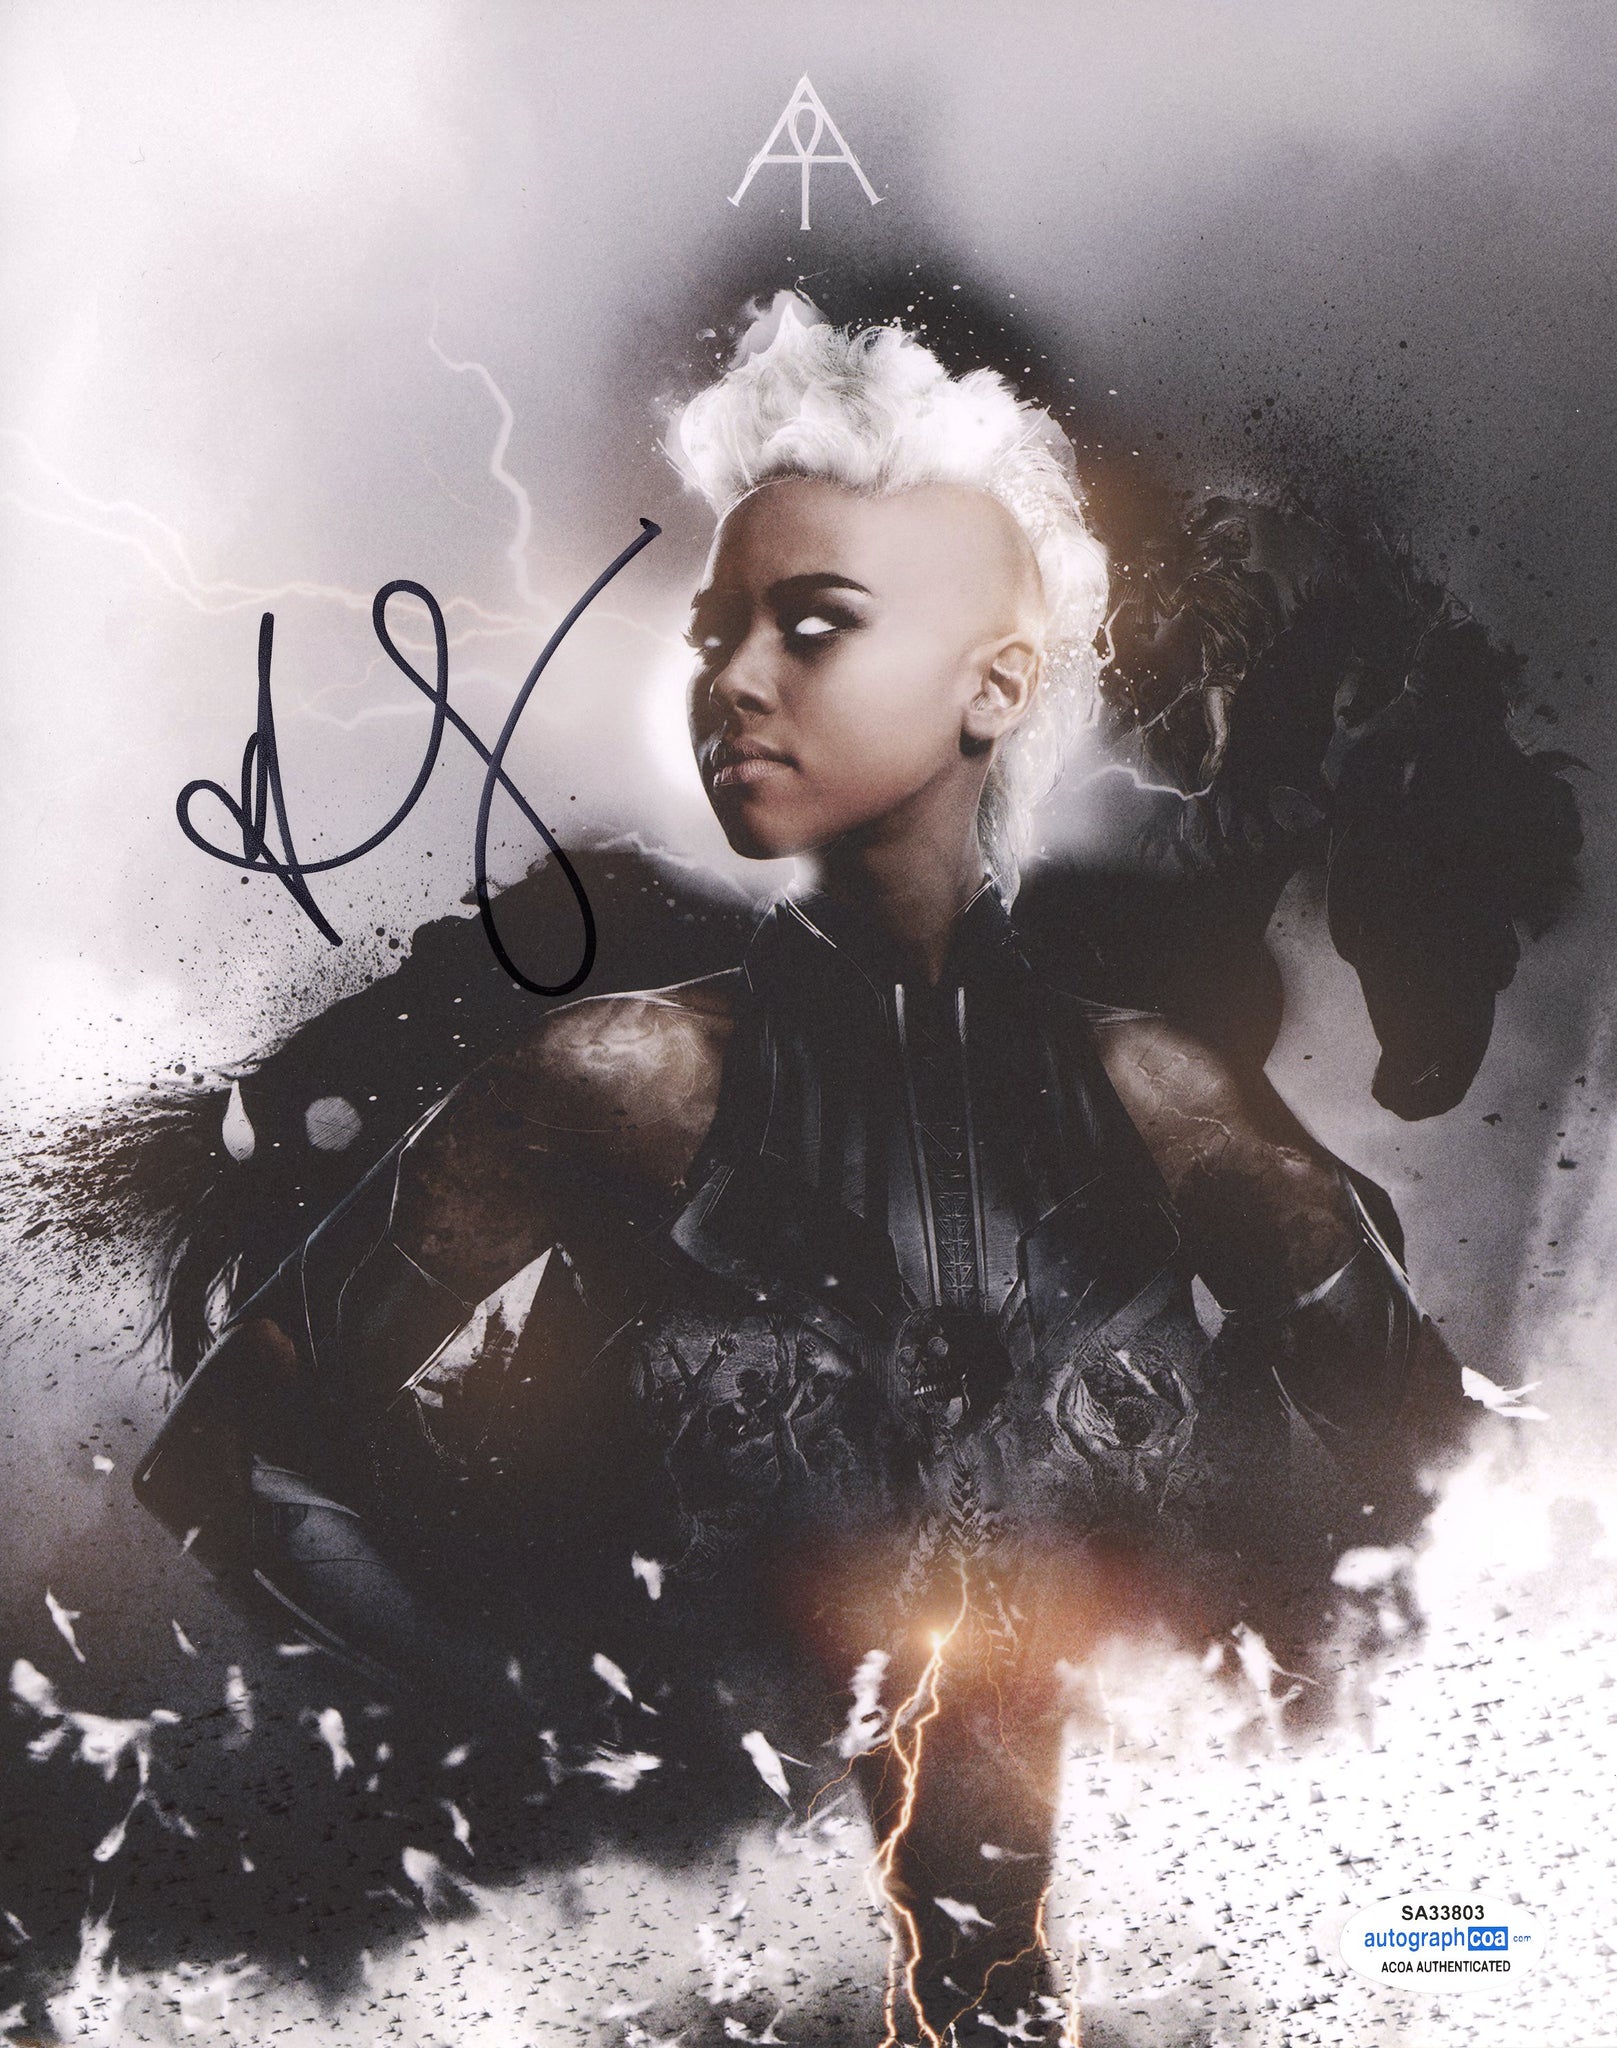 Alexandra Shipp X-Men The Storm Signed Autograph 8x10 Photo ACoA #7 - Outlaw Hobbies Authentic Autographs